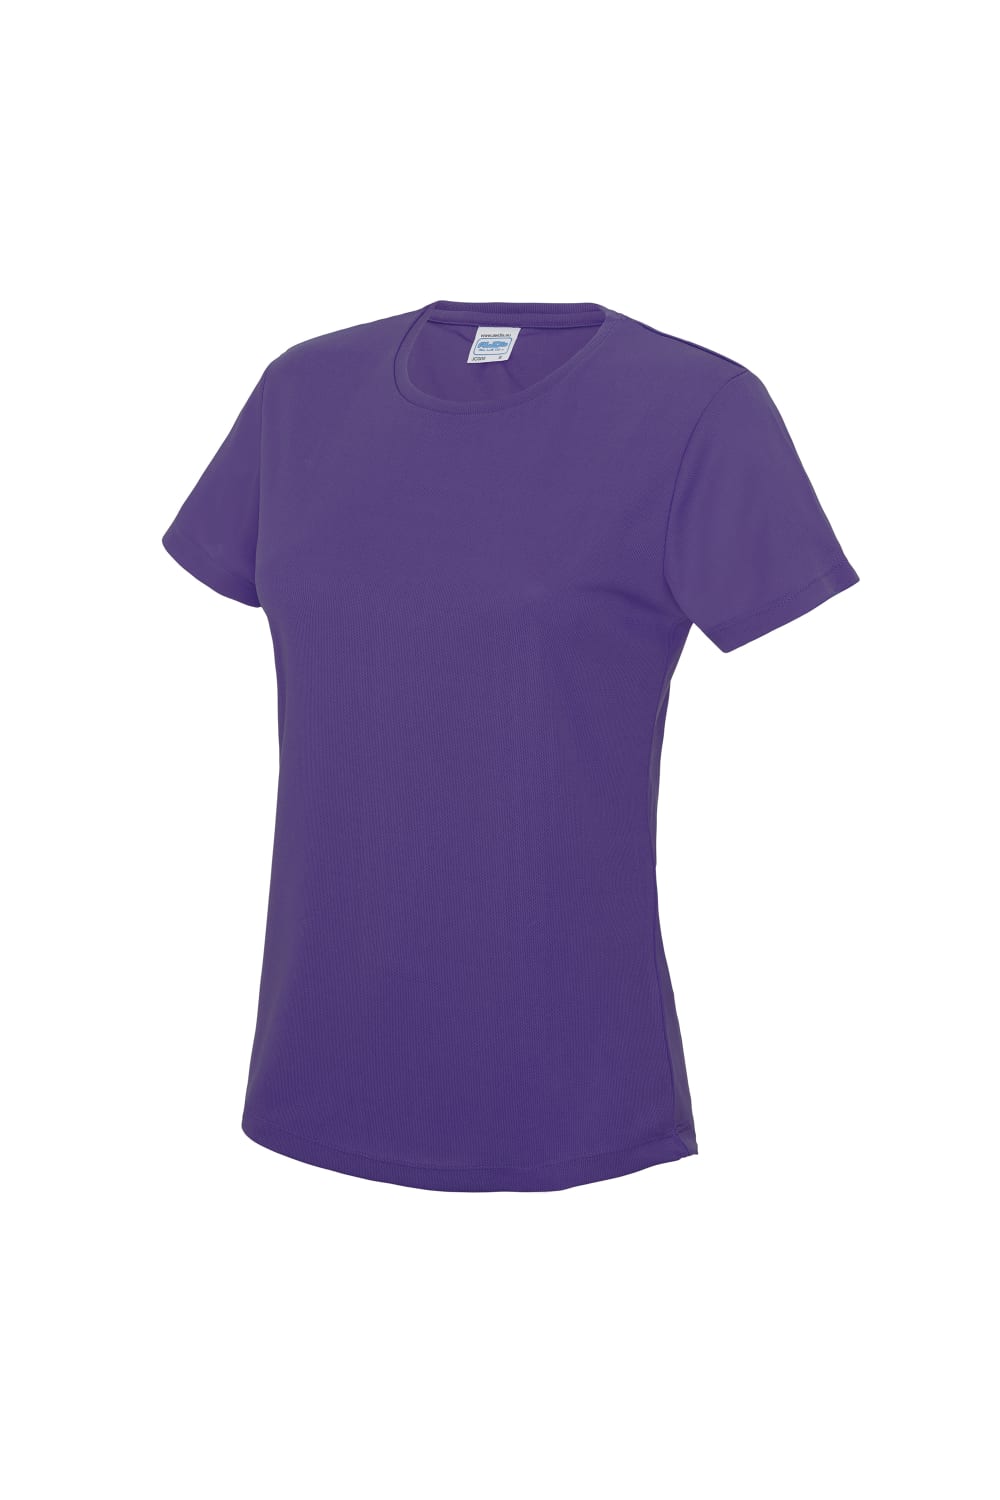 Just Cool Womens/Ladies Sports Plain T-Shirt (Purple)